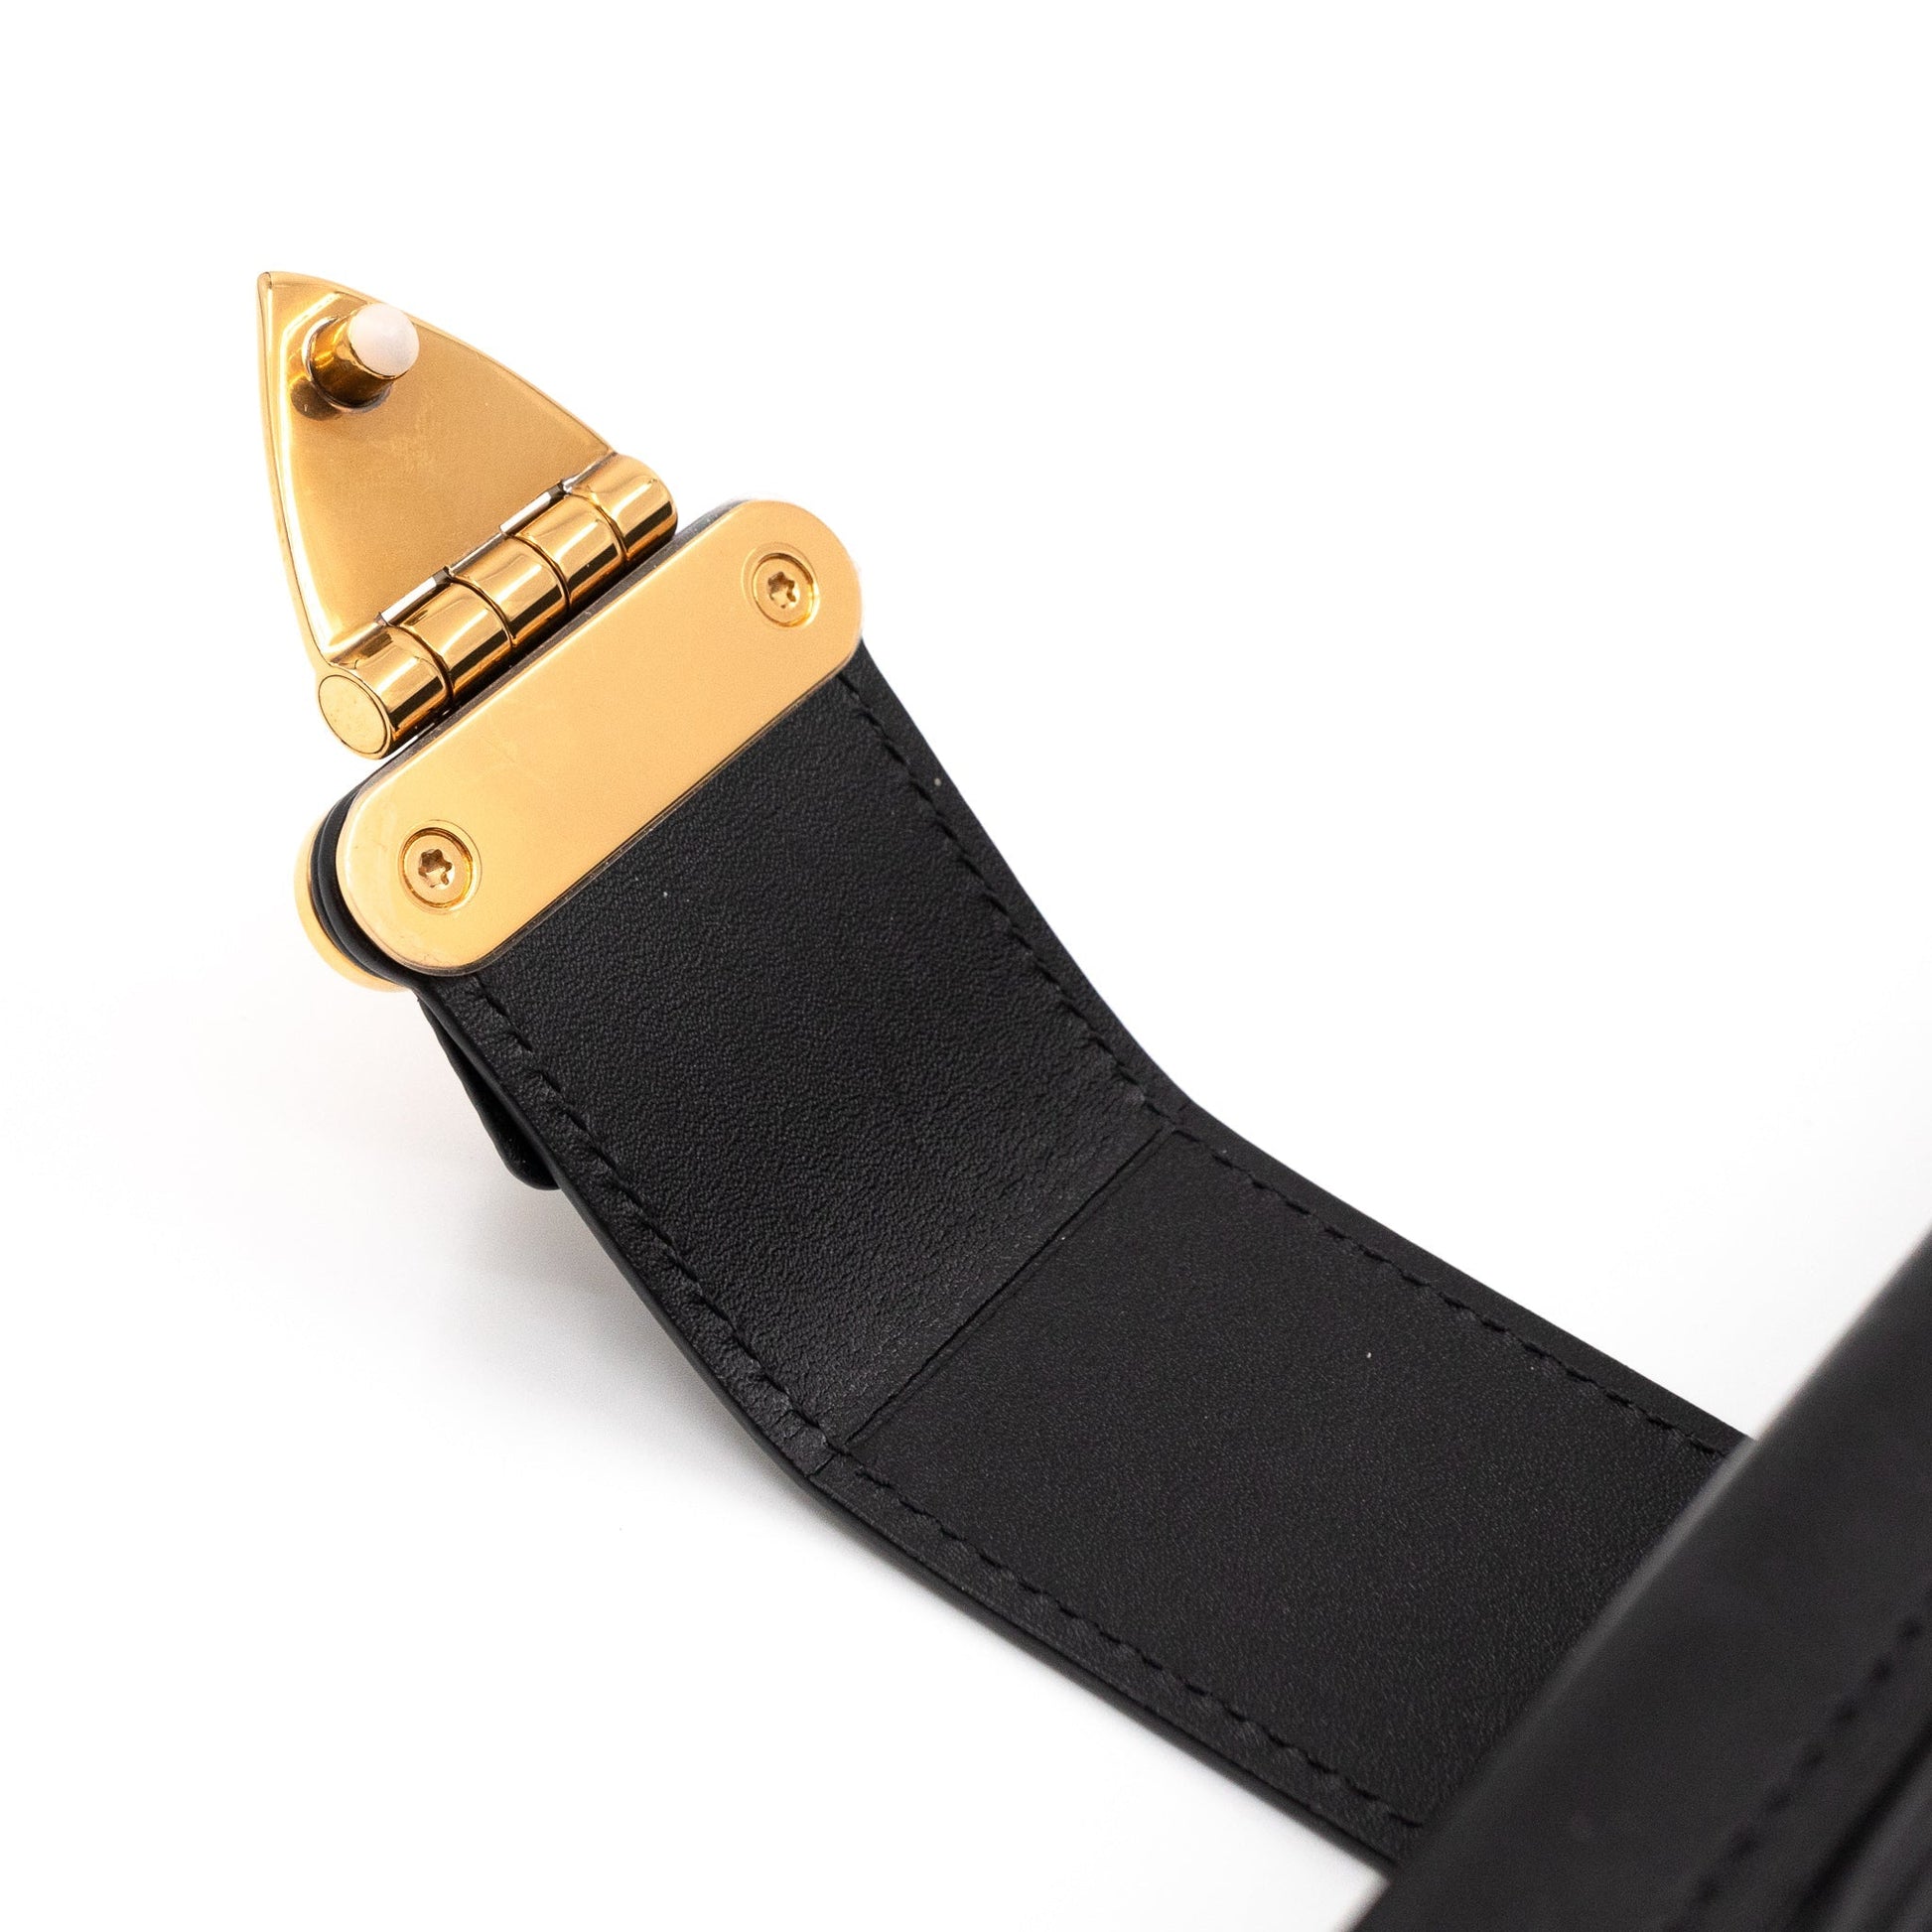 Louis Vuitton PETITE MALLE 2021-22FW Party Petite Malle Arm Bracelet  (M8019A)